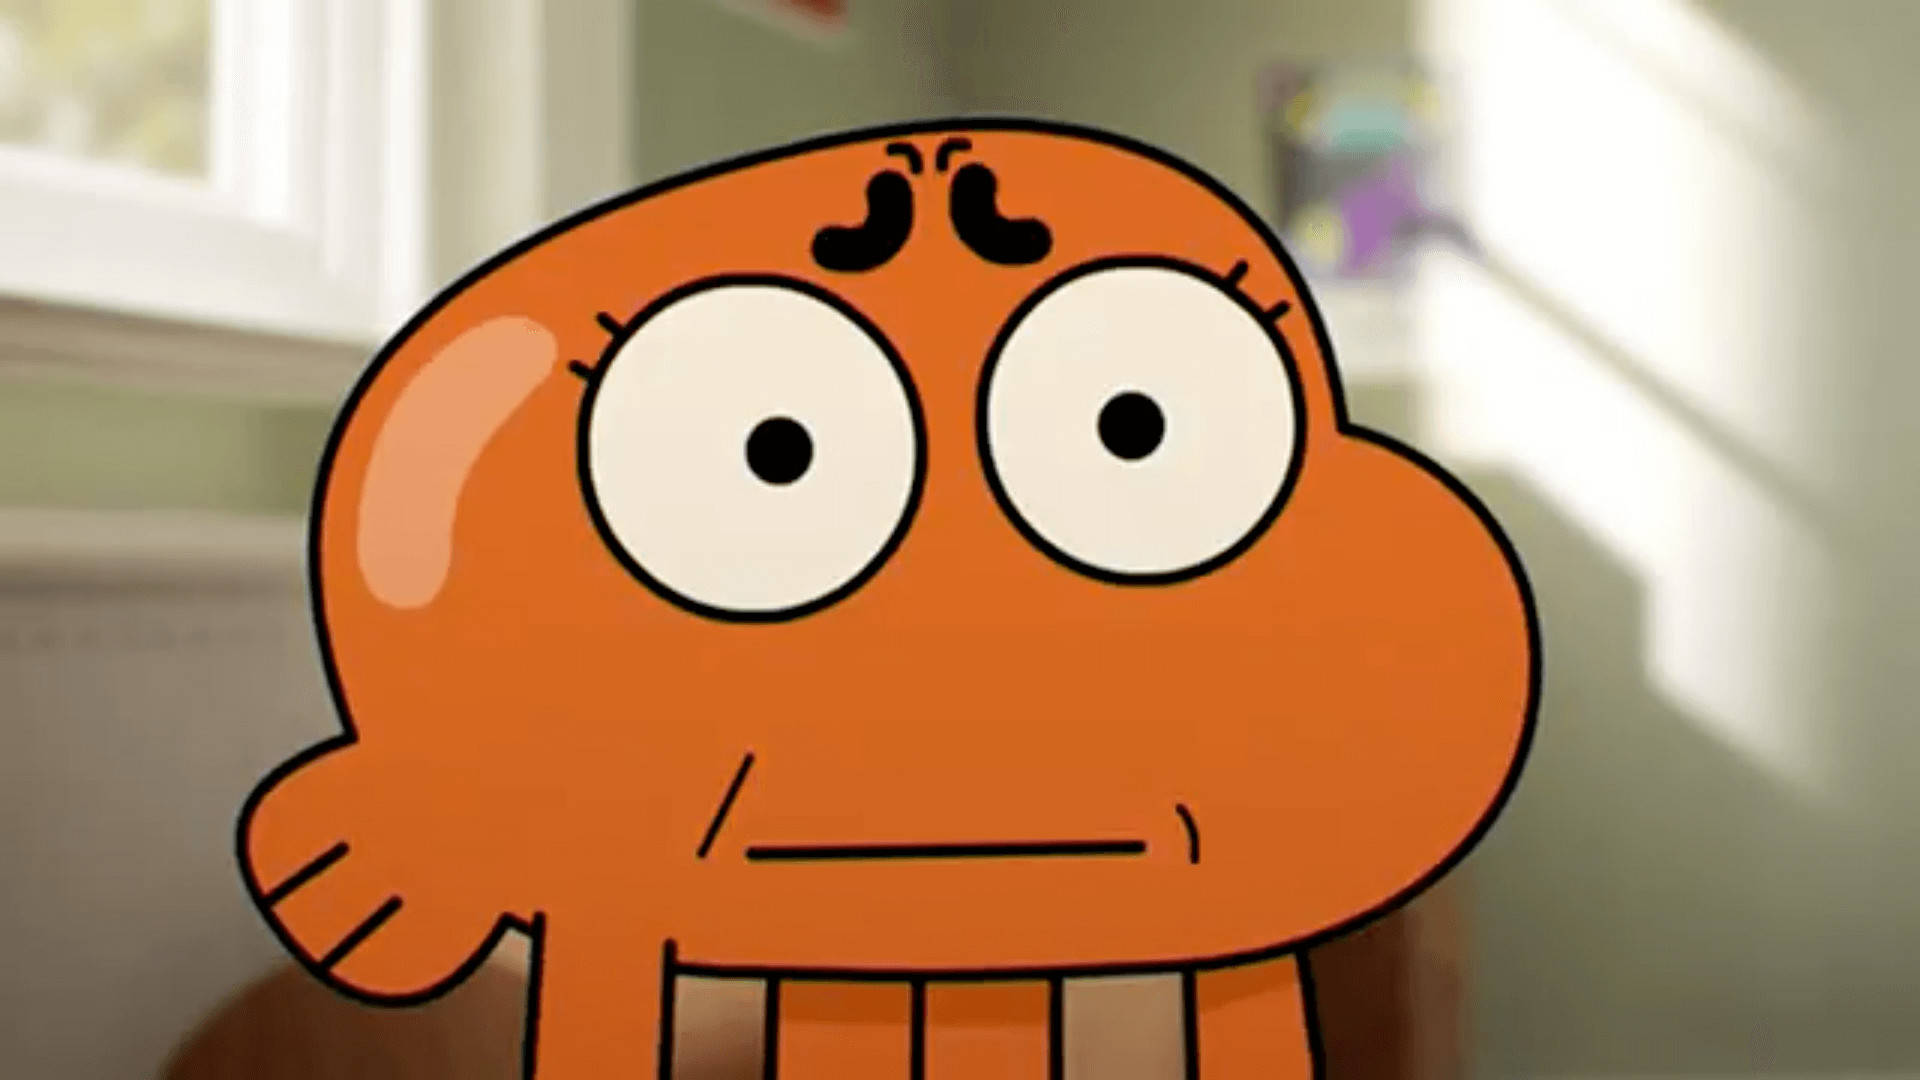 En tegneserie orangemalet blæksprutte med store øjne, der svømmer i midten Wallpaper